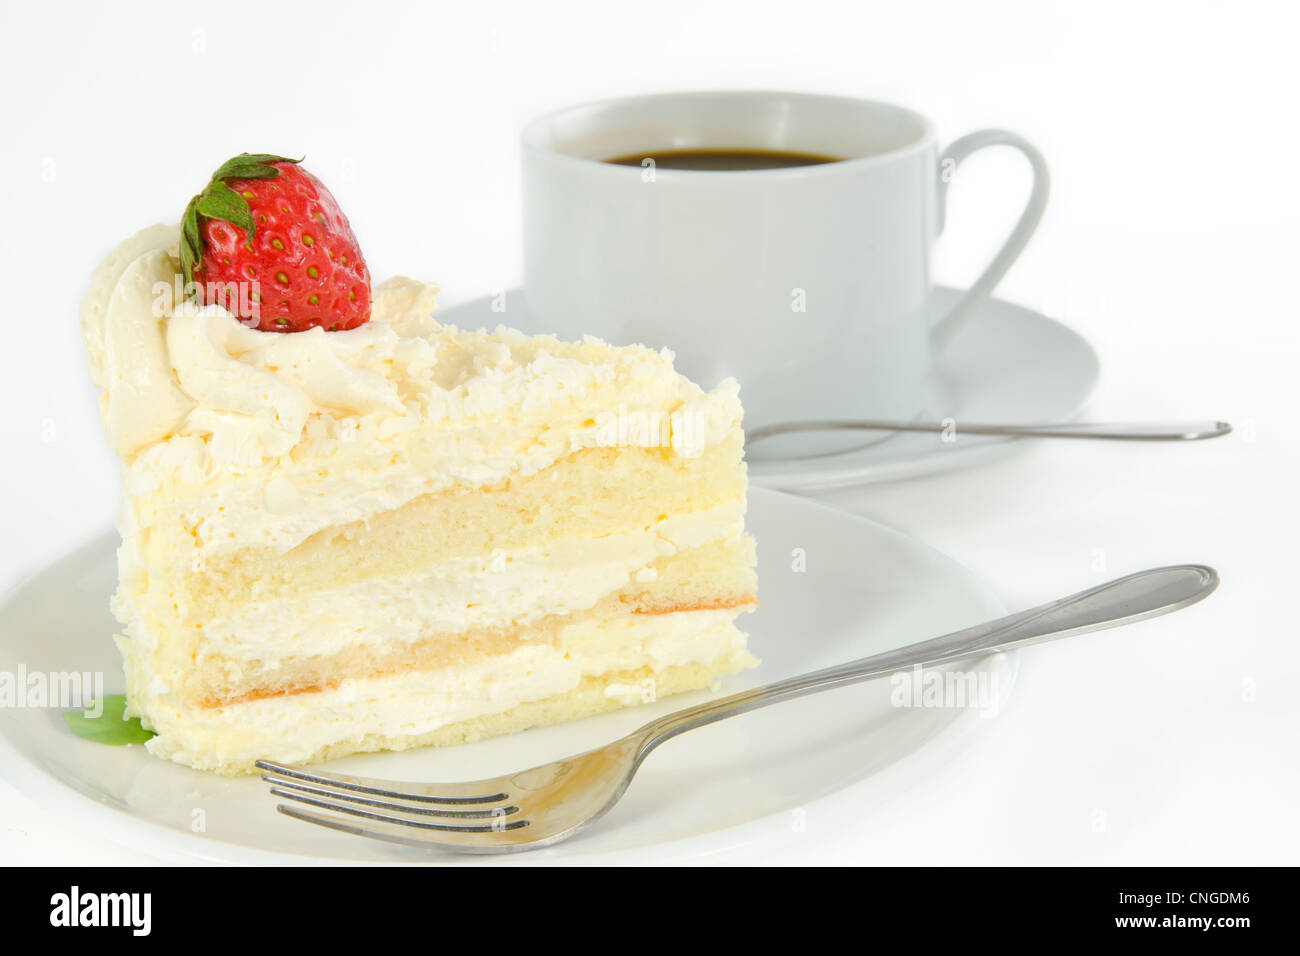 Délicieux gâteau vanille fraise avec décorer sur le dessus et une tasse de café Banque D'Images